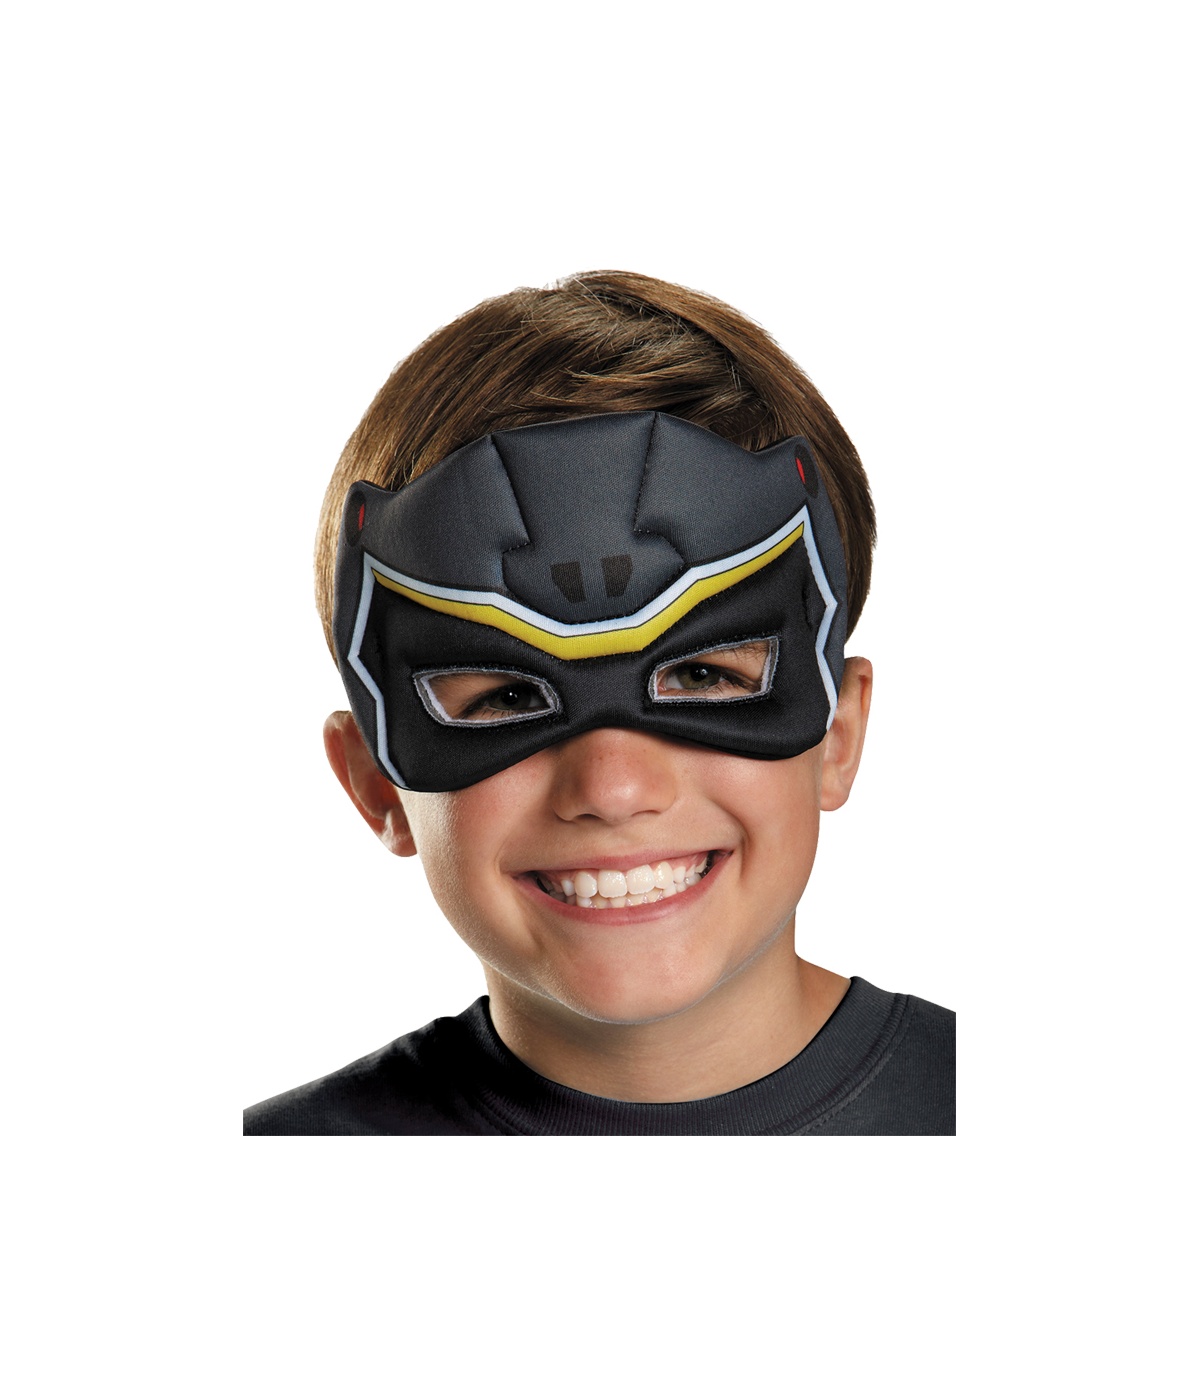  Boys Ranger Dino Mask